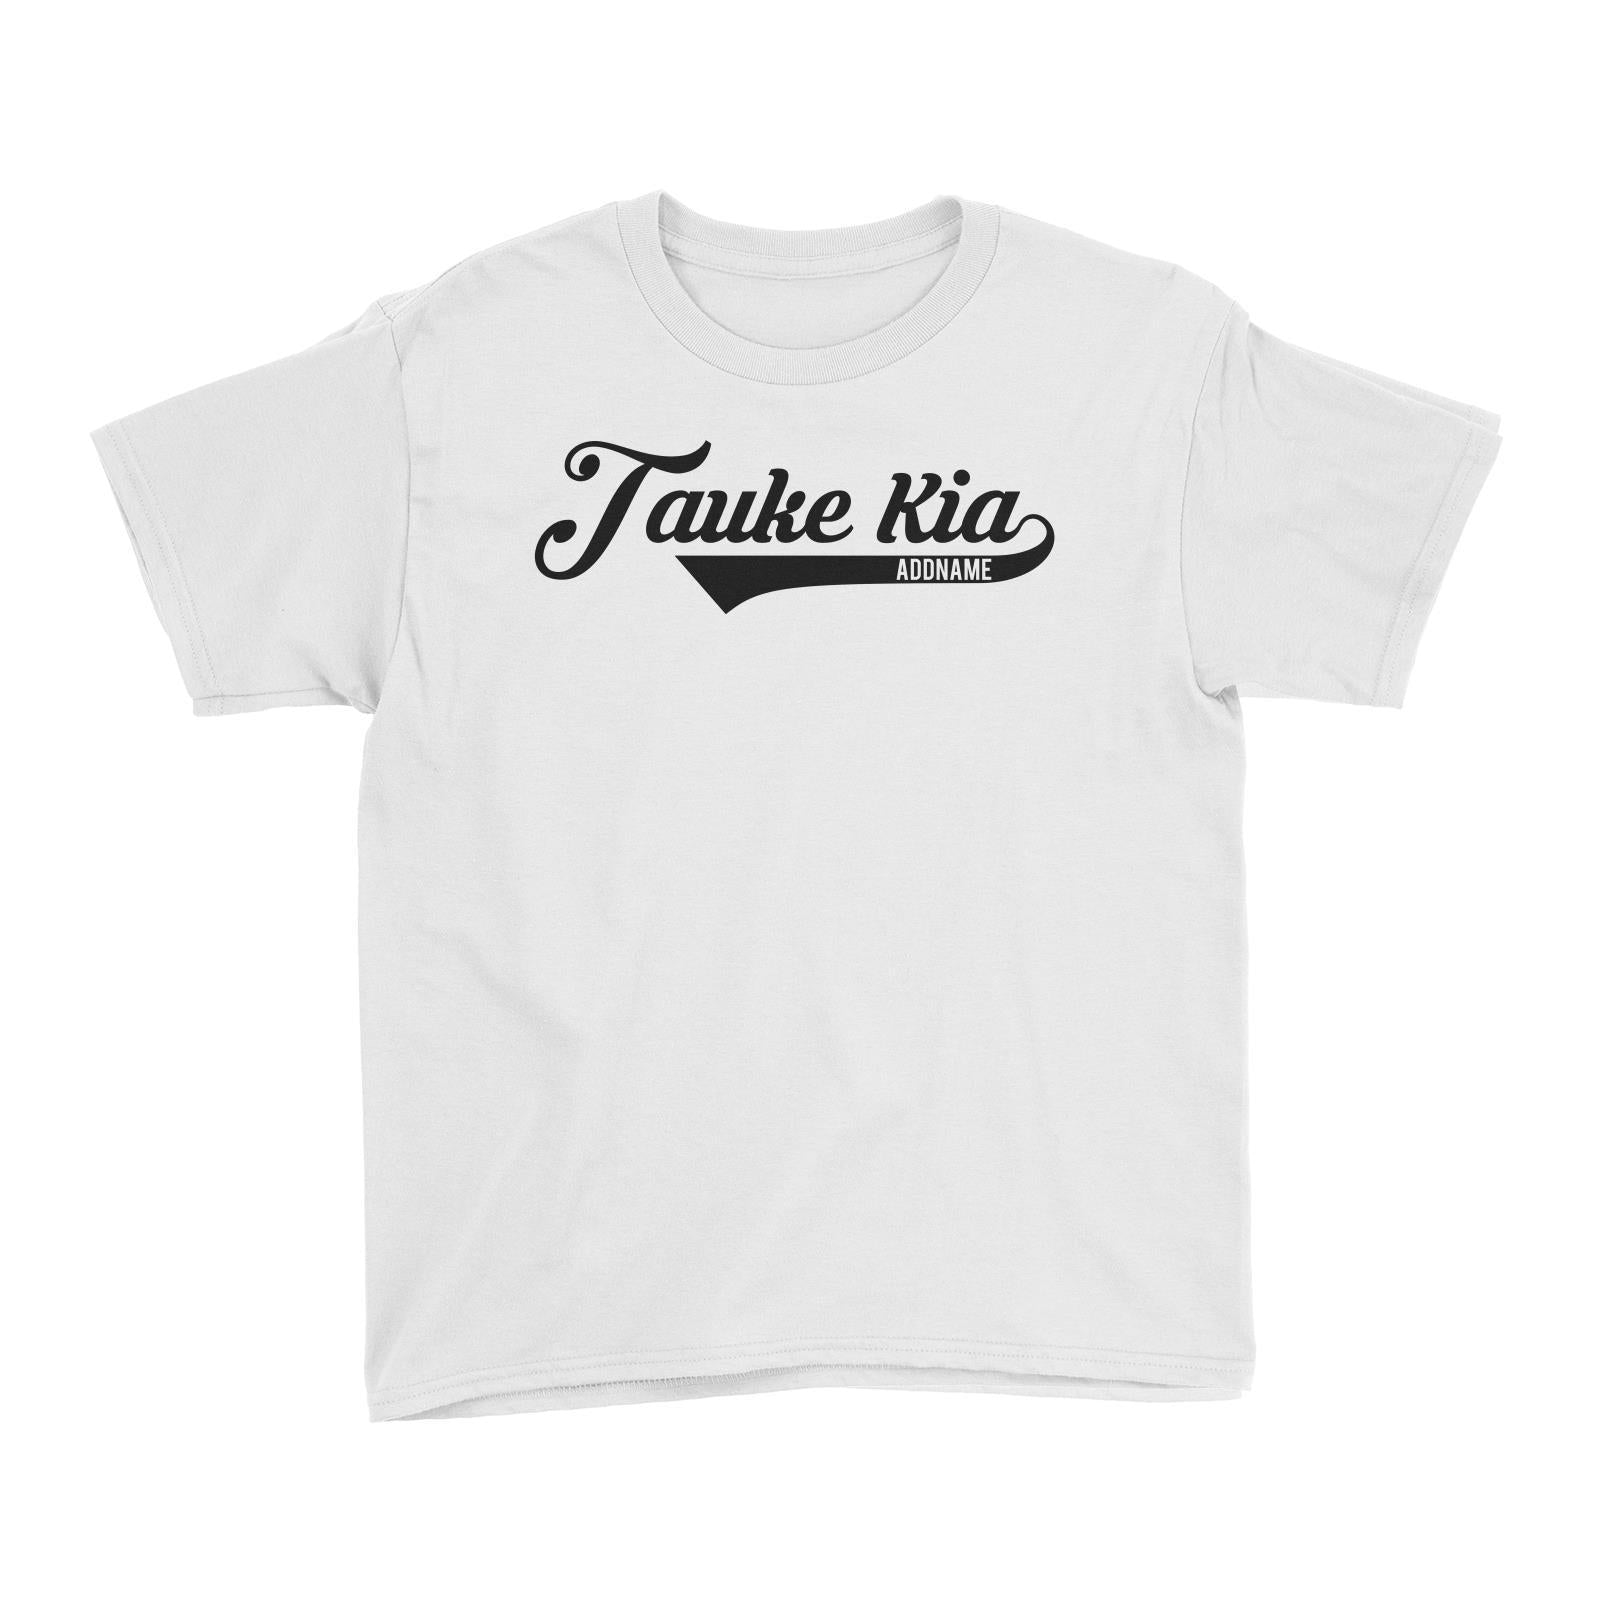 Tauke Kia Kid's T-Shirt